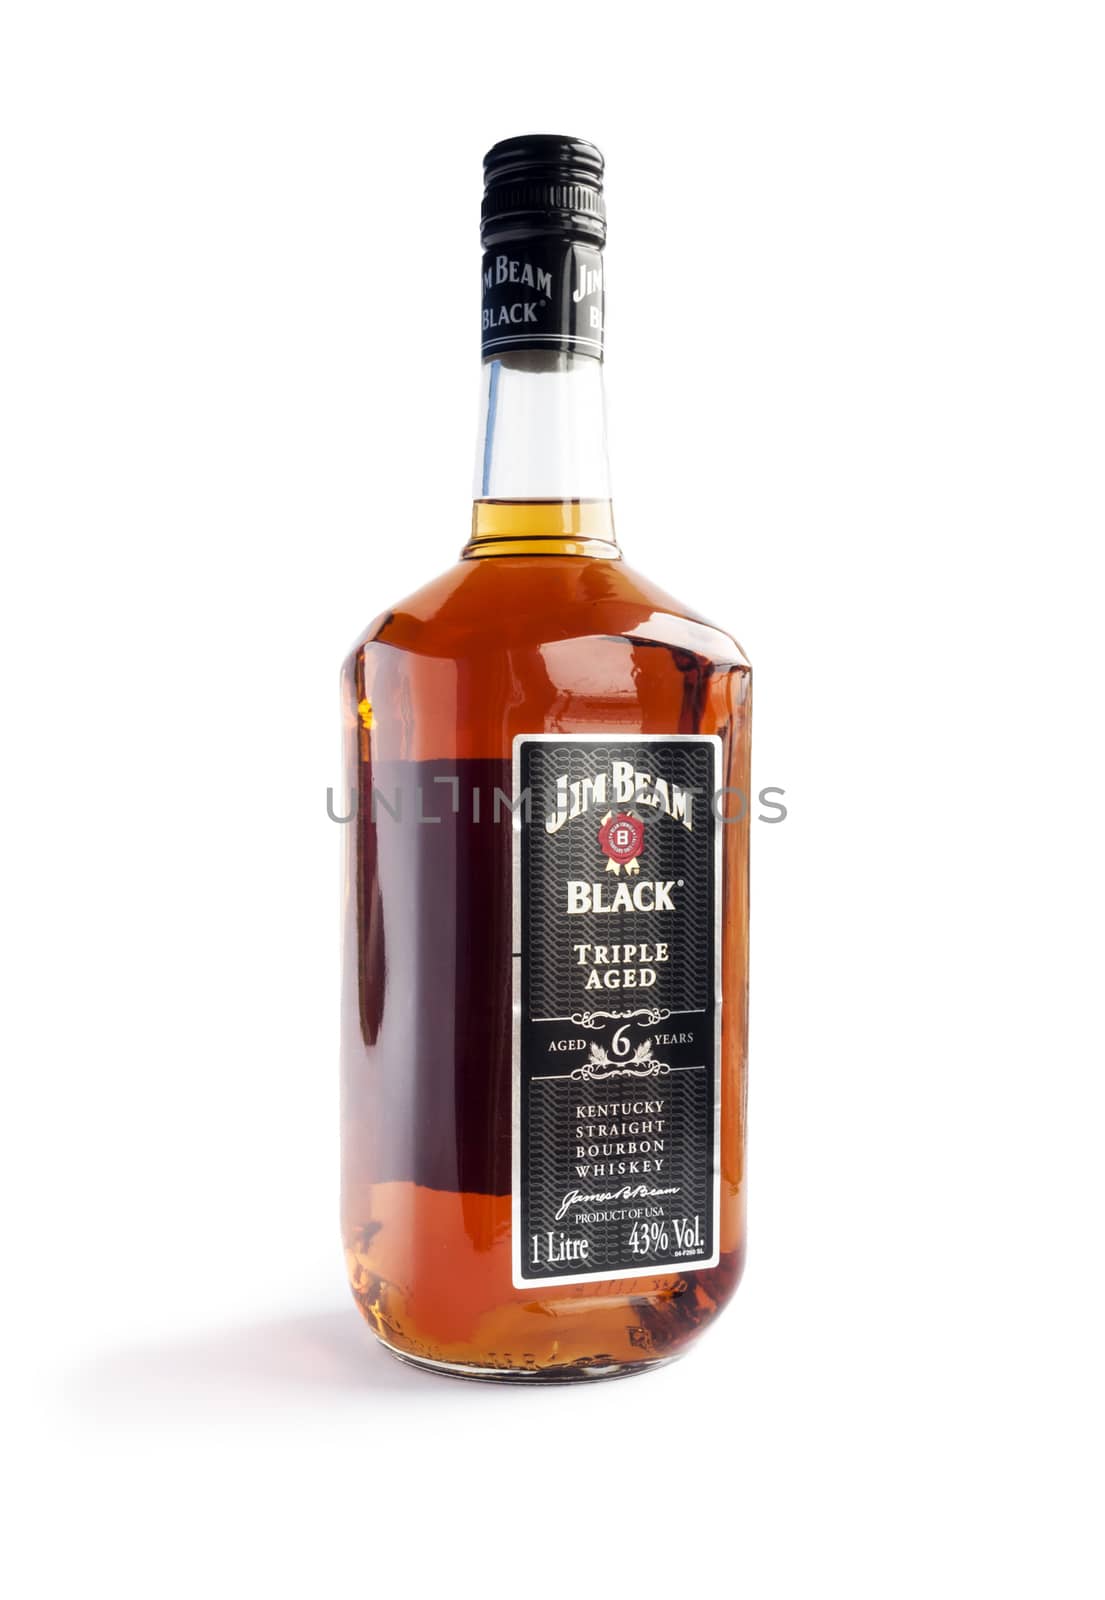 Bottle of Jim Beam Black isolated on white background.  by maxmitzu